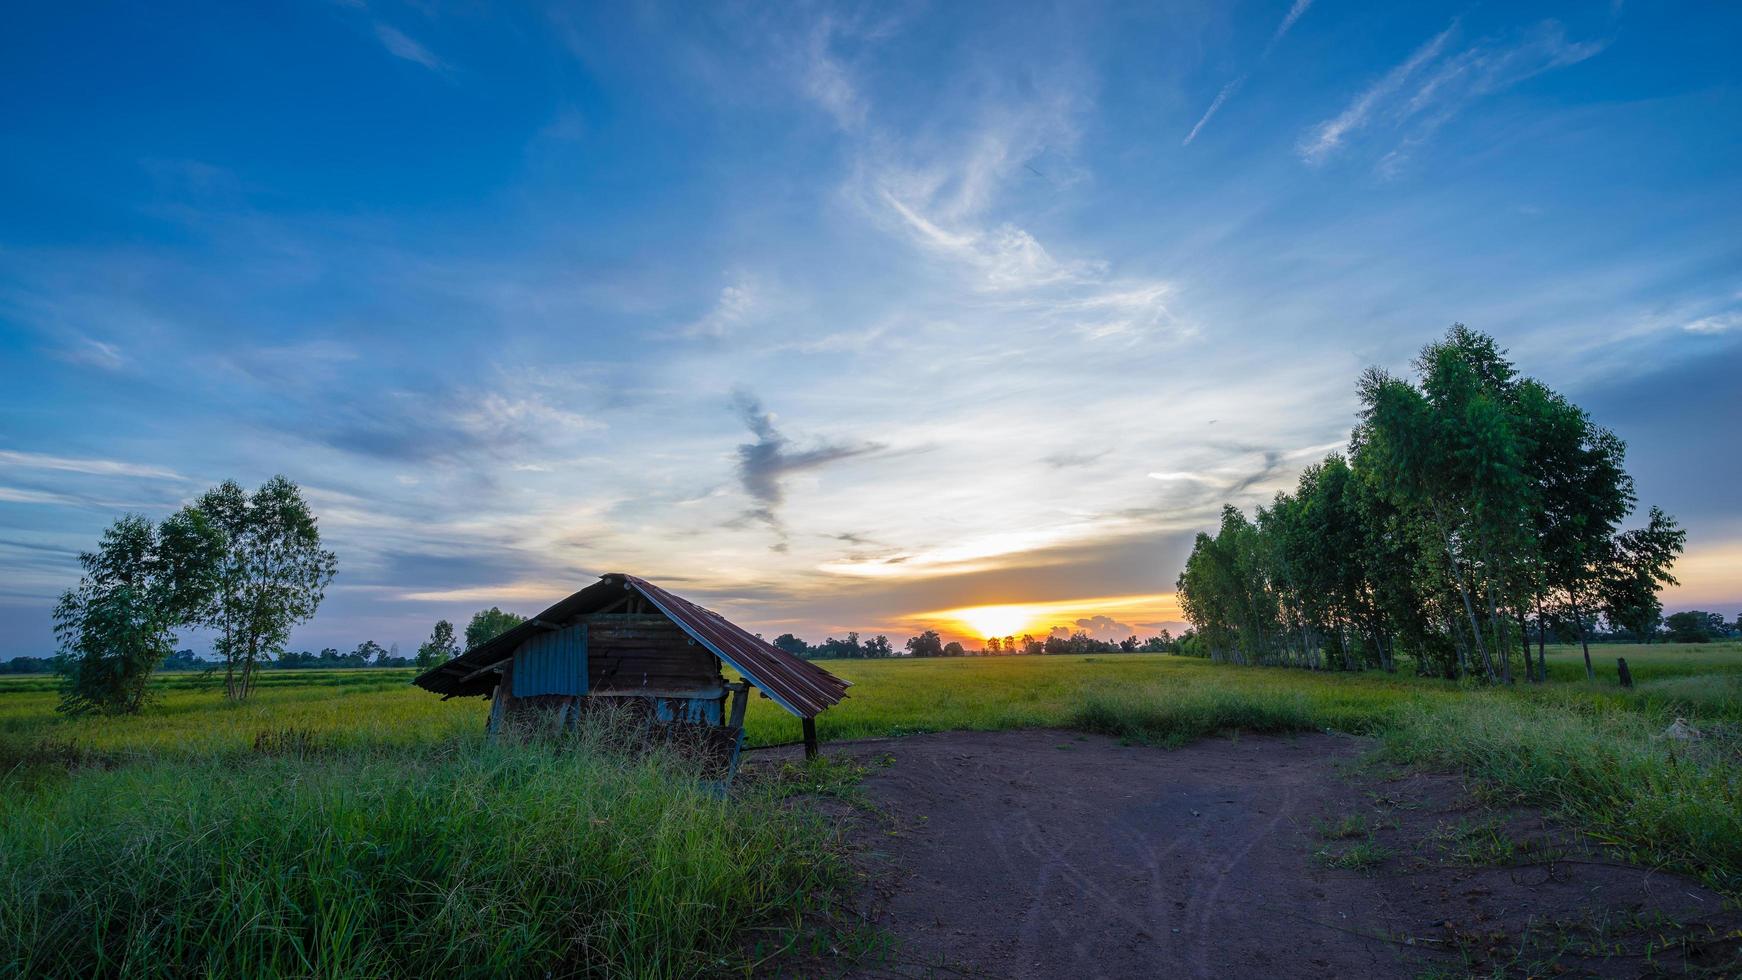 Hütte in den grünen Reisfeldern mit Sonnenuntergang foto